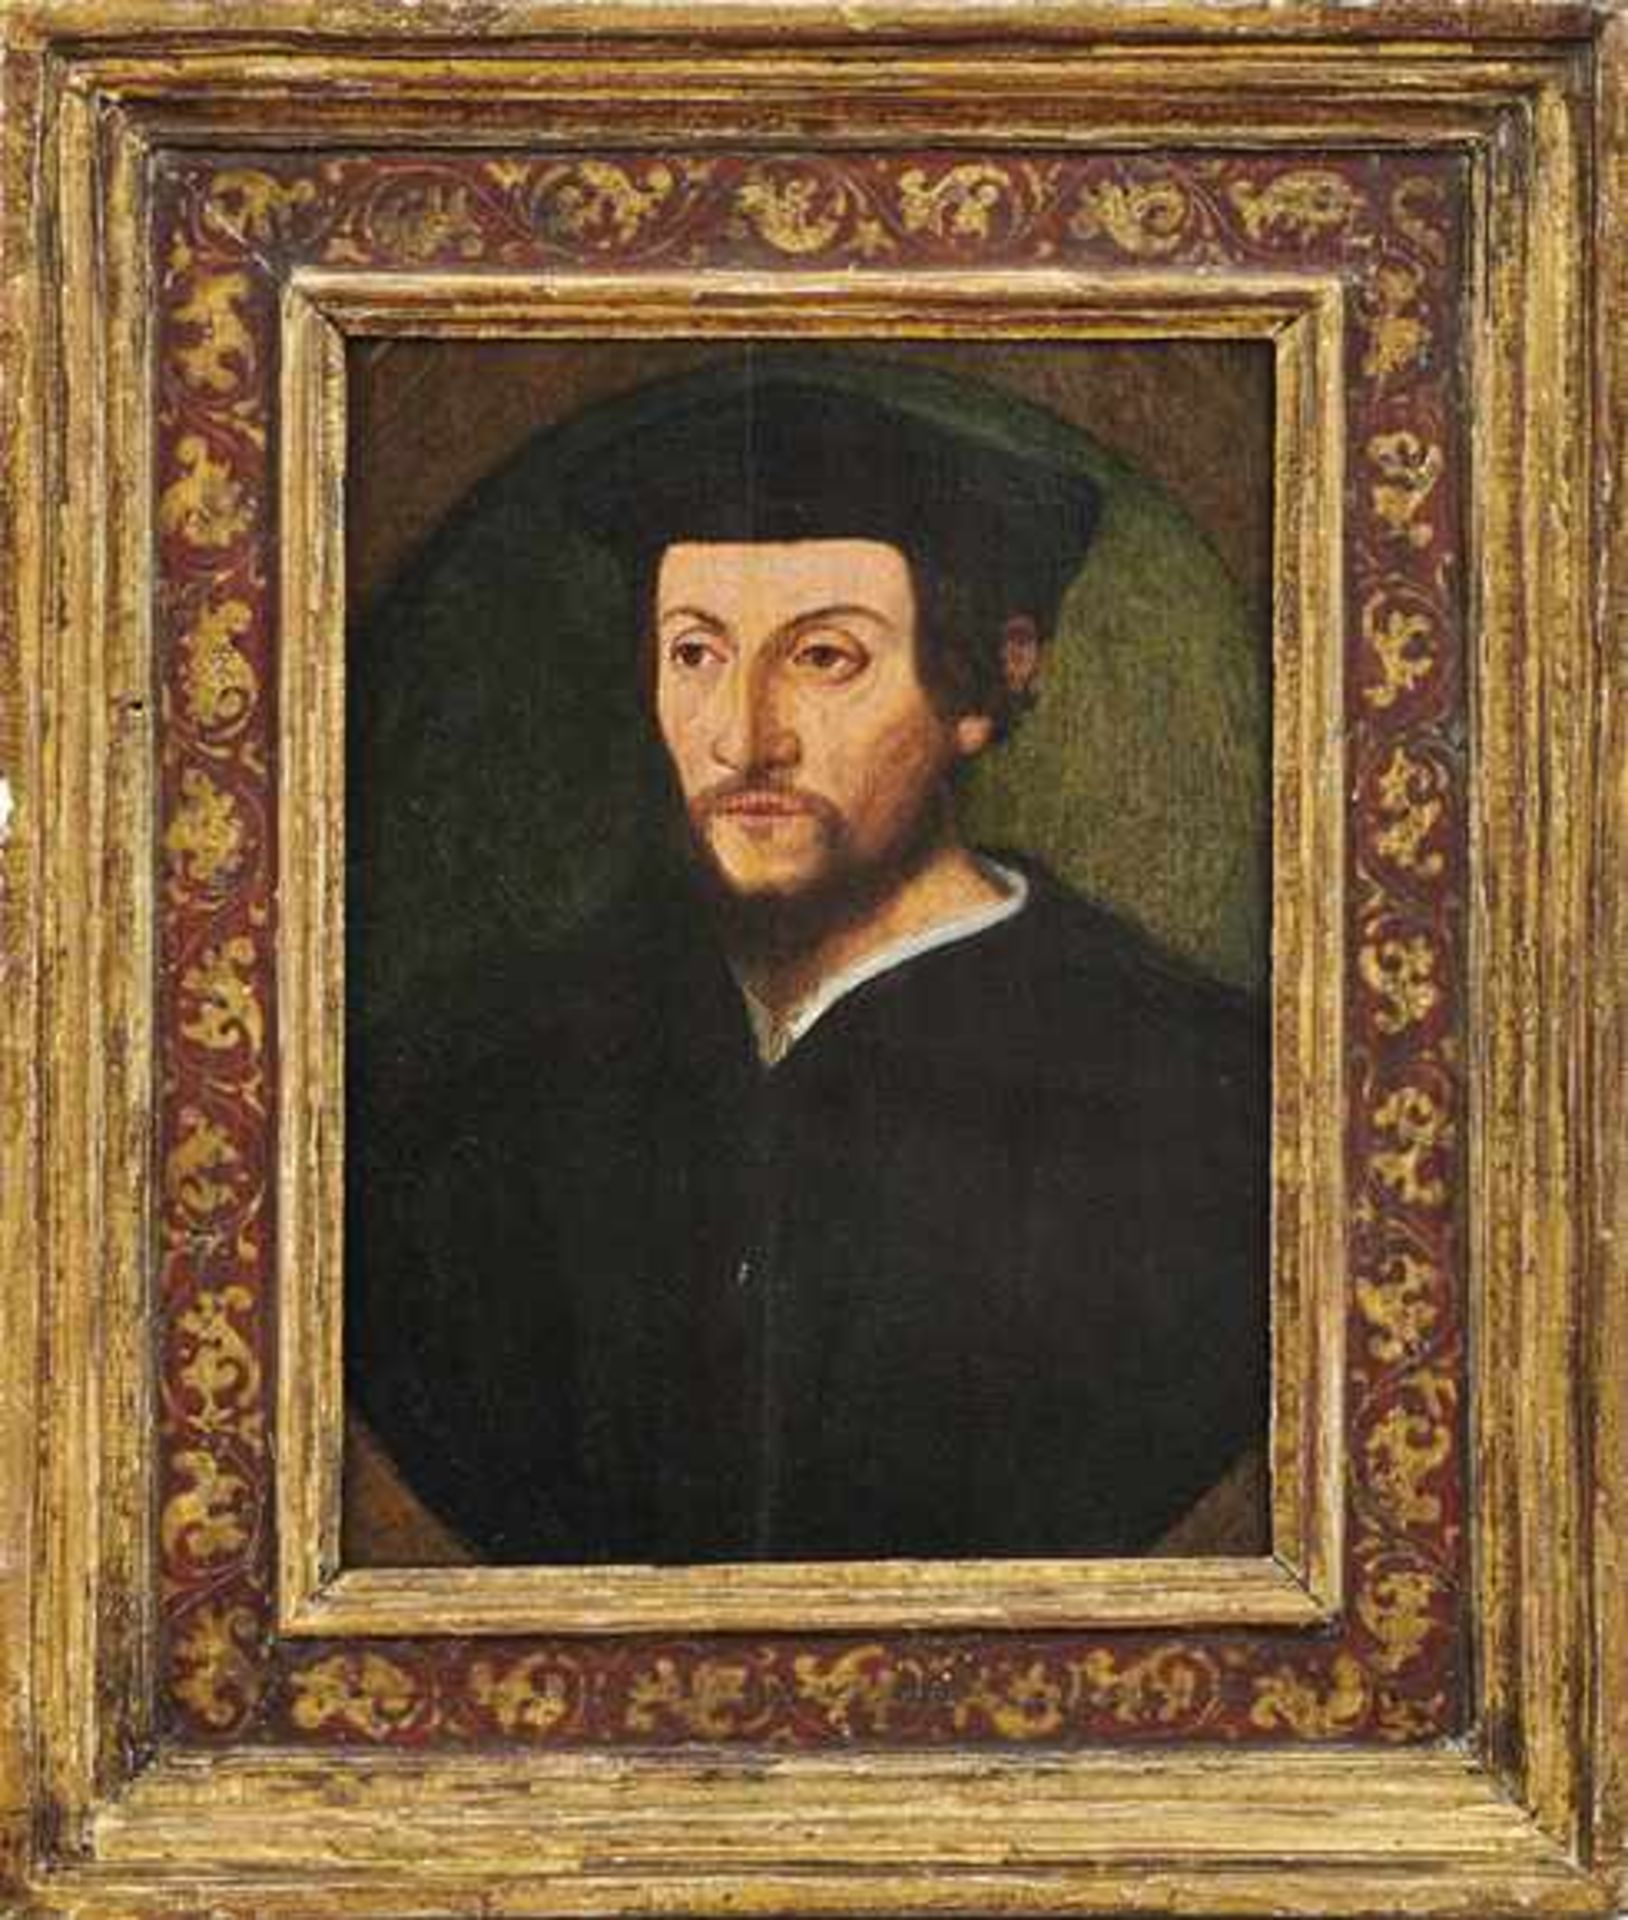 Bildnis eines Herren mit Bart und BarettA. 17. Jh.Öl/Holz, parkettiert. 24 x 18 cm; in vergoldeten